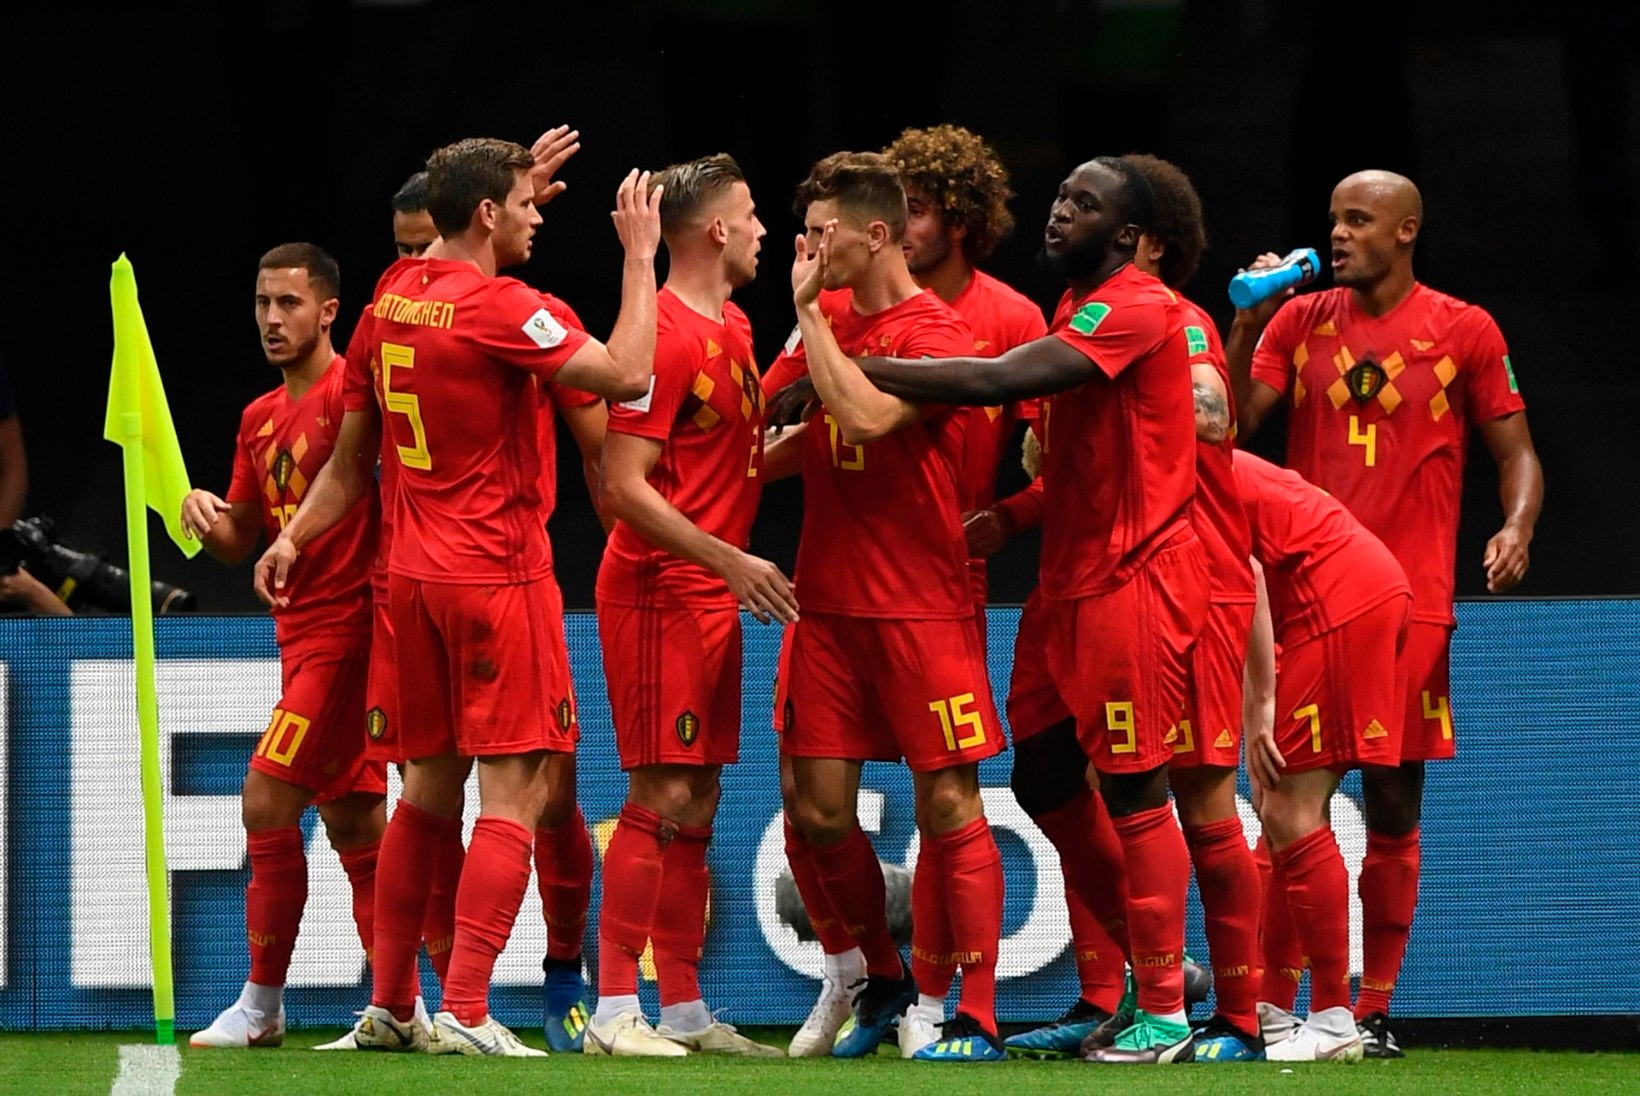 NII SEE JUHTUS | Prantsusmaa ja Belgia sammusid poolfinaalidesse